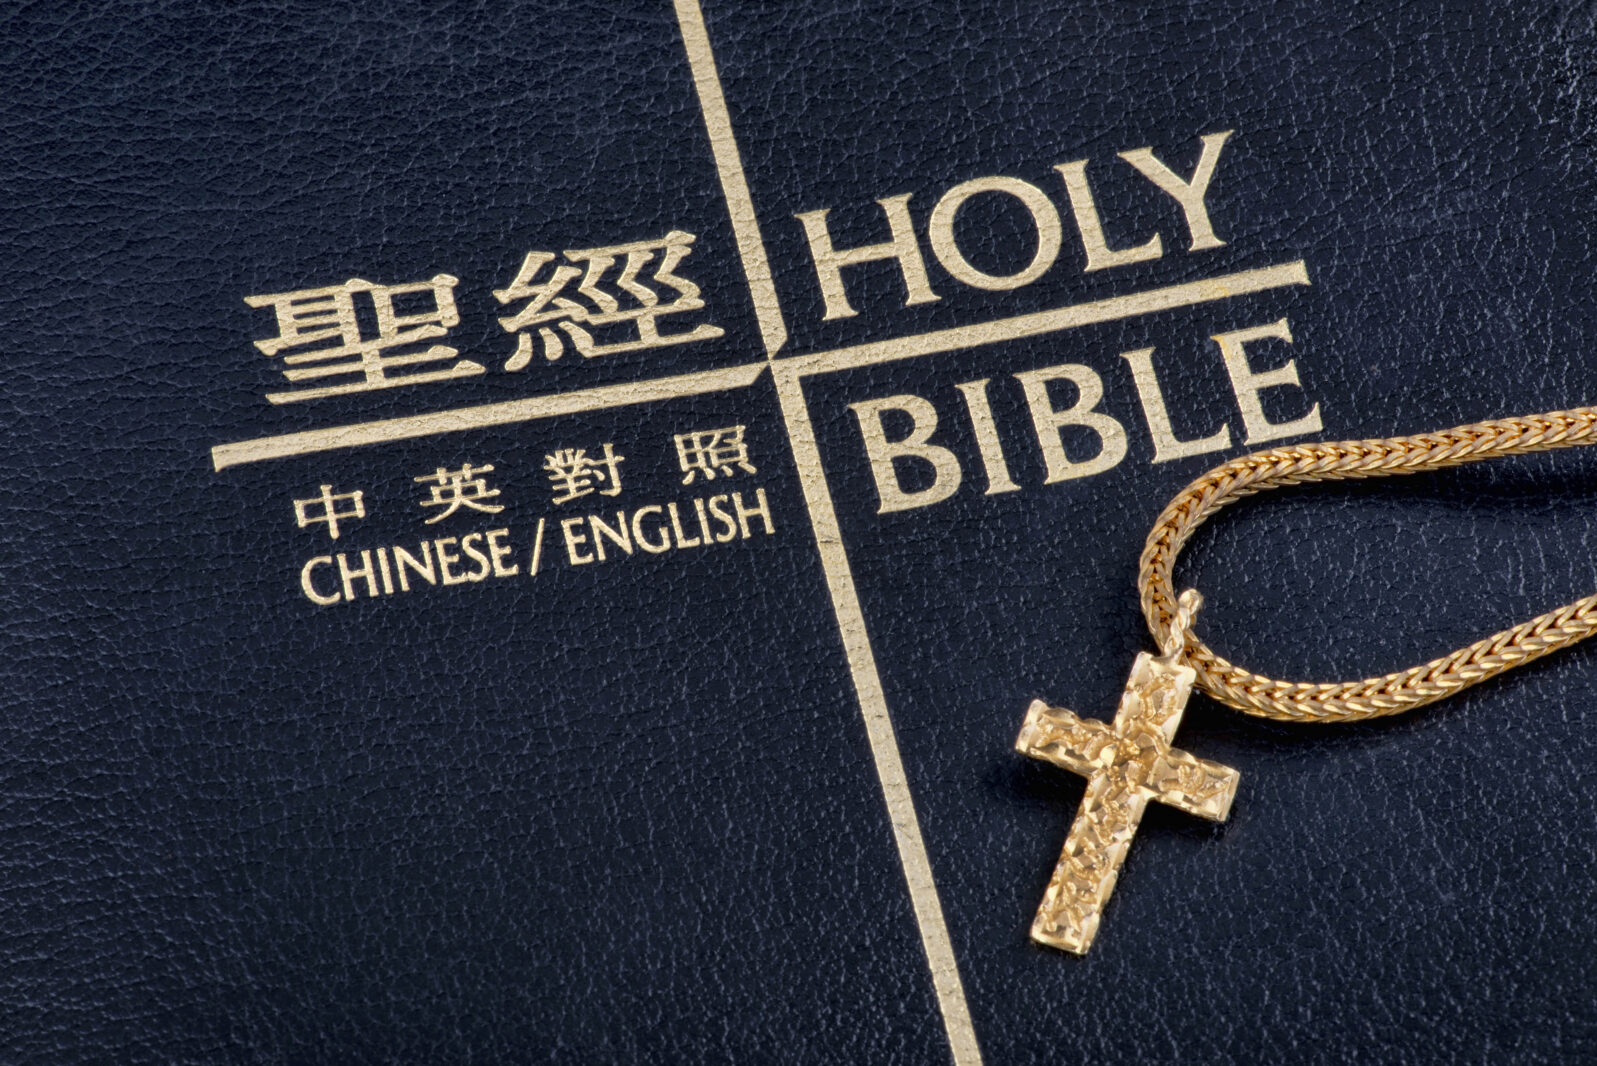 Chinese English Bible.